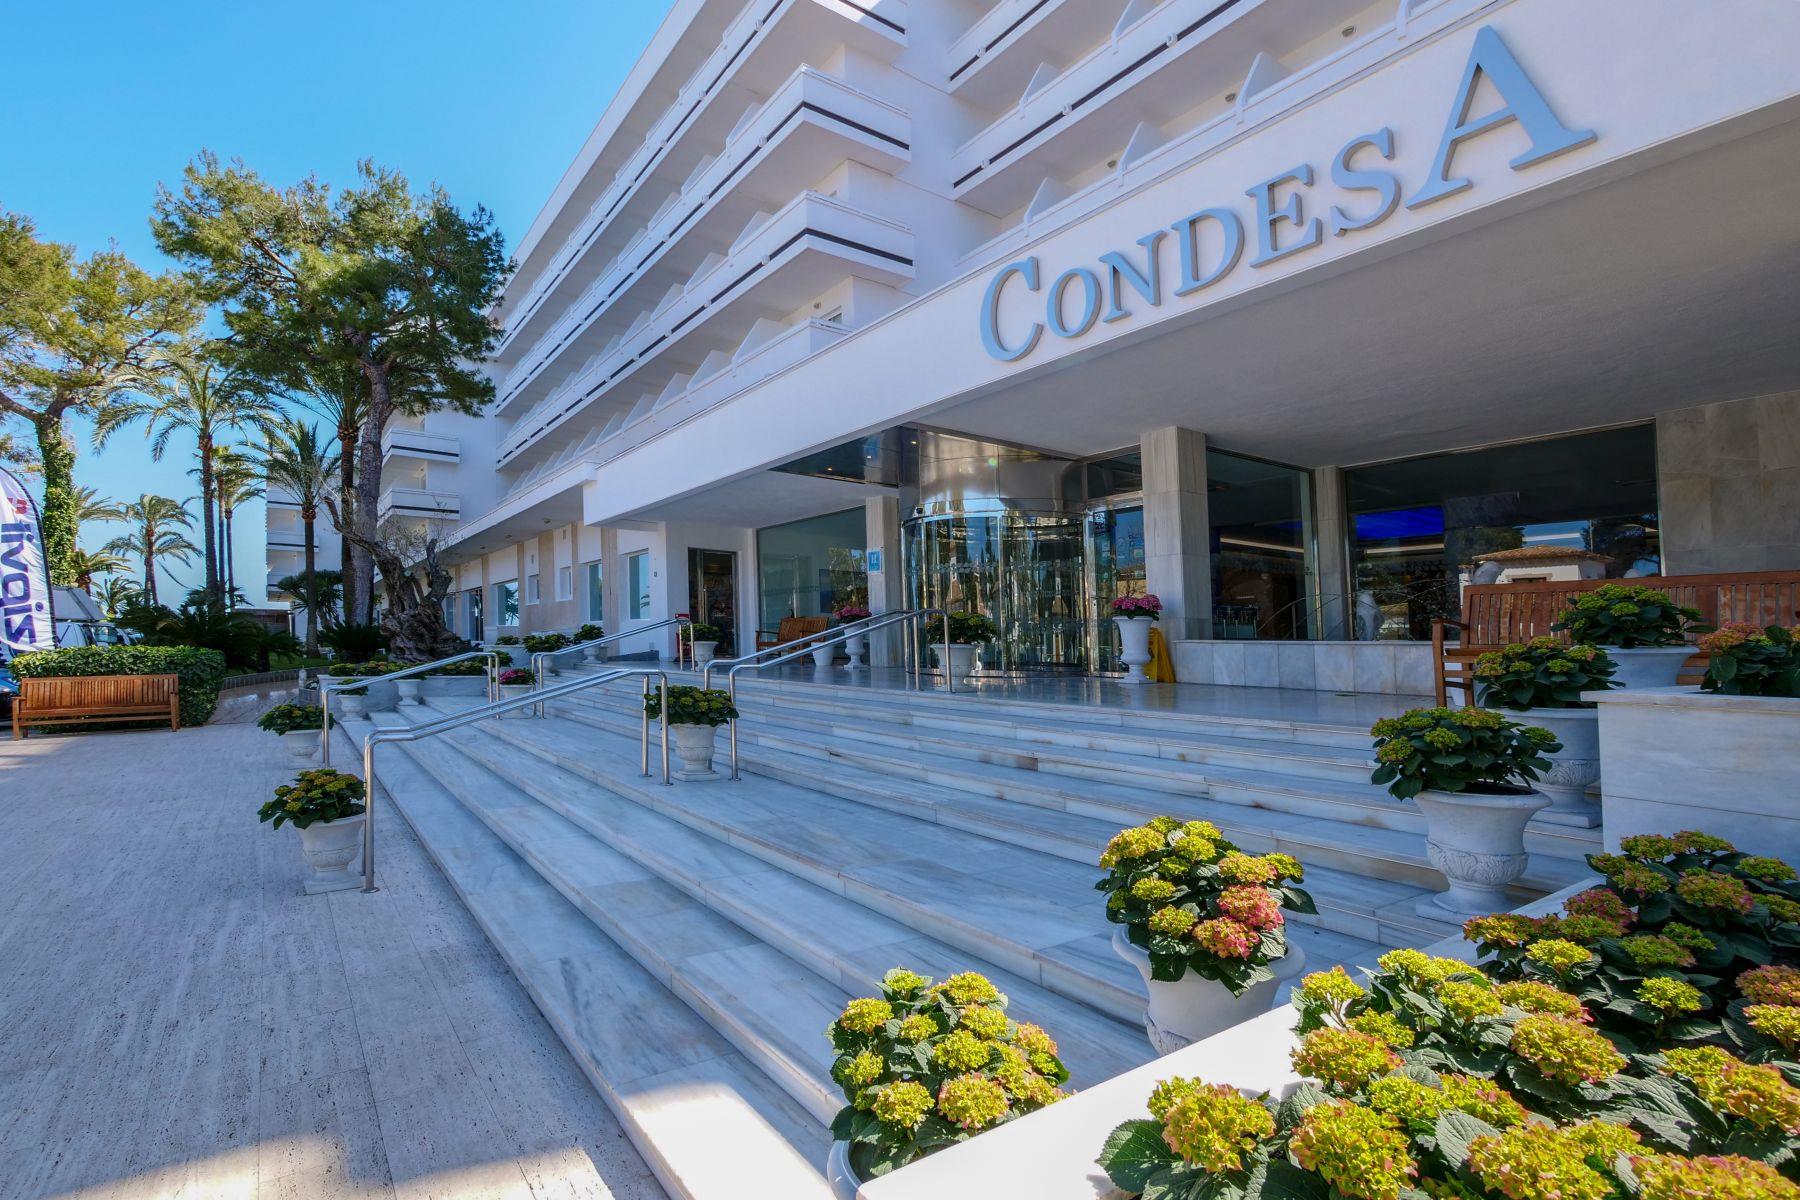 Hotel Condesa